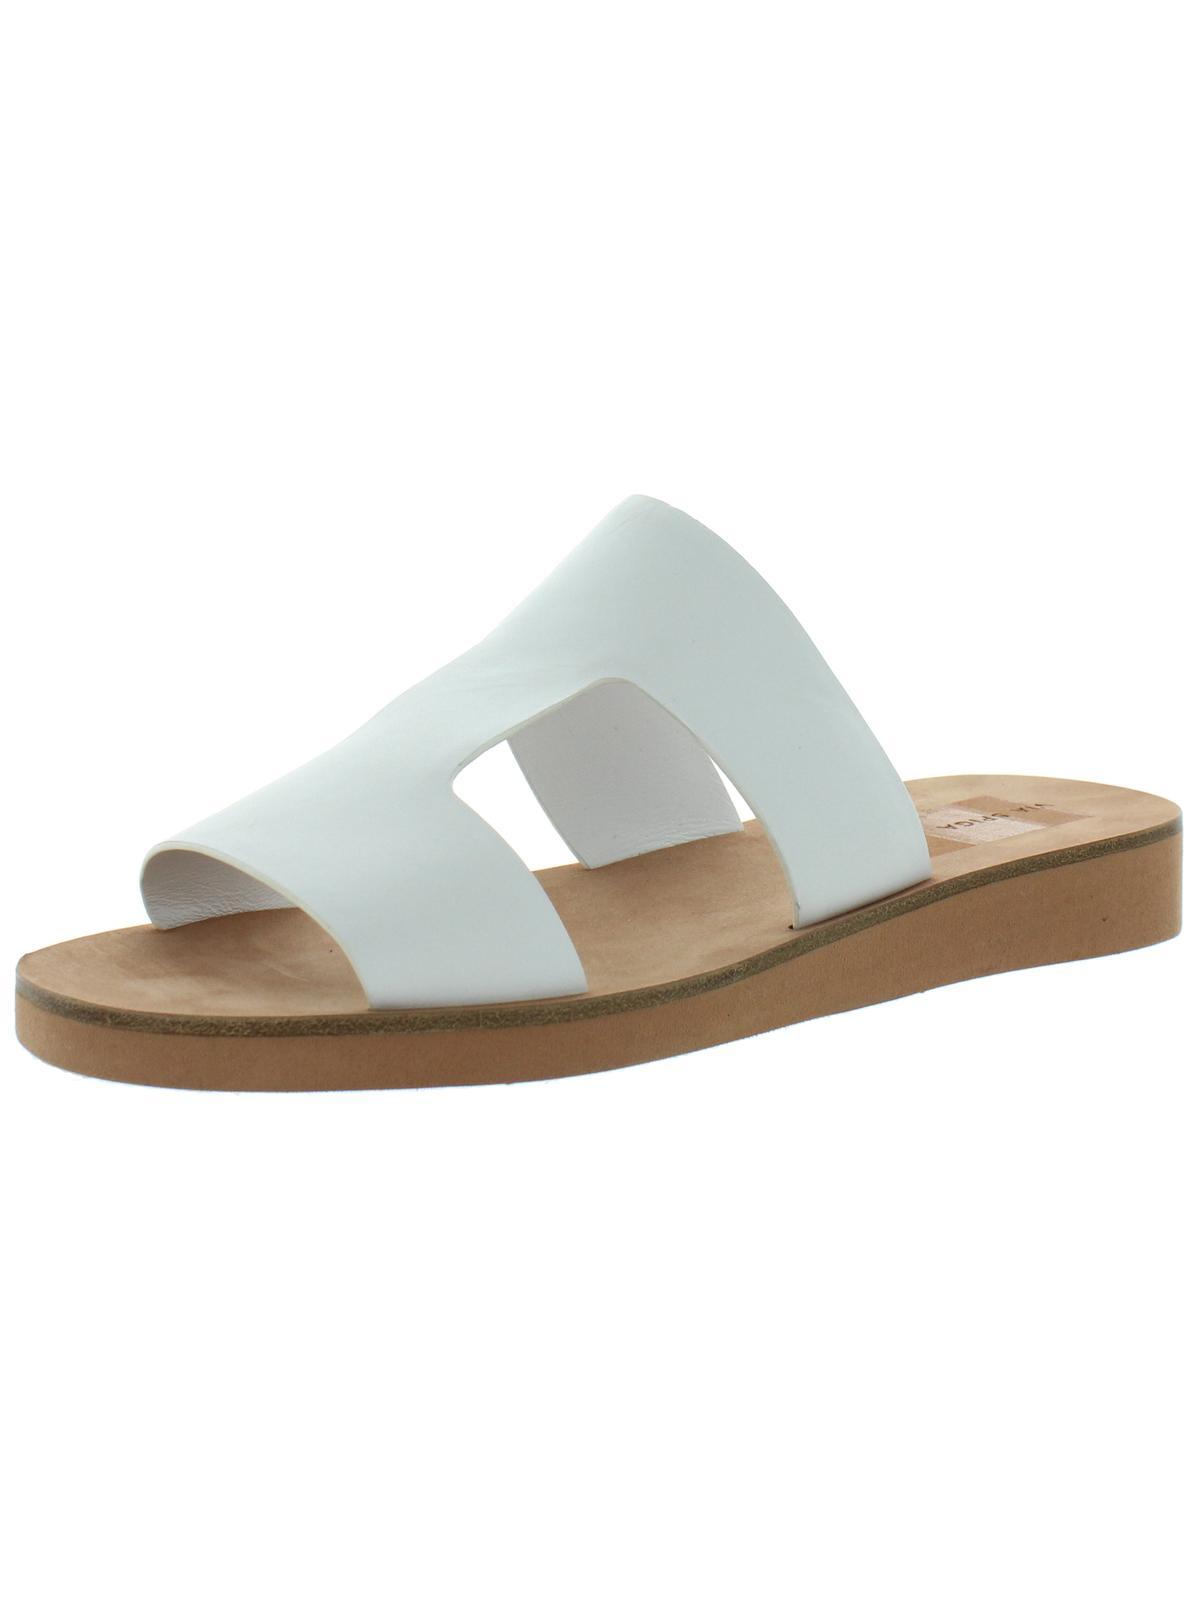 Via Spiga Blanka Leather Slip On Flat Sandals in White | Lyst